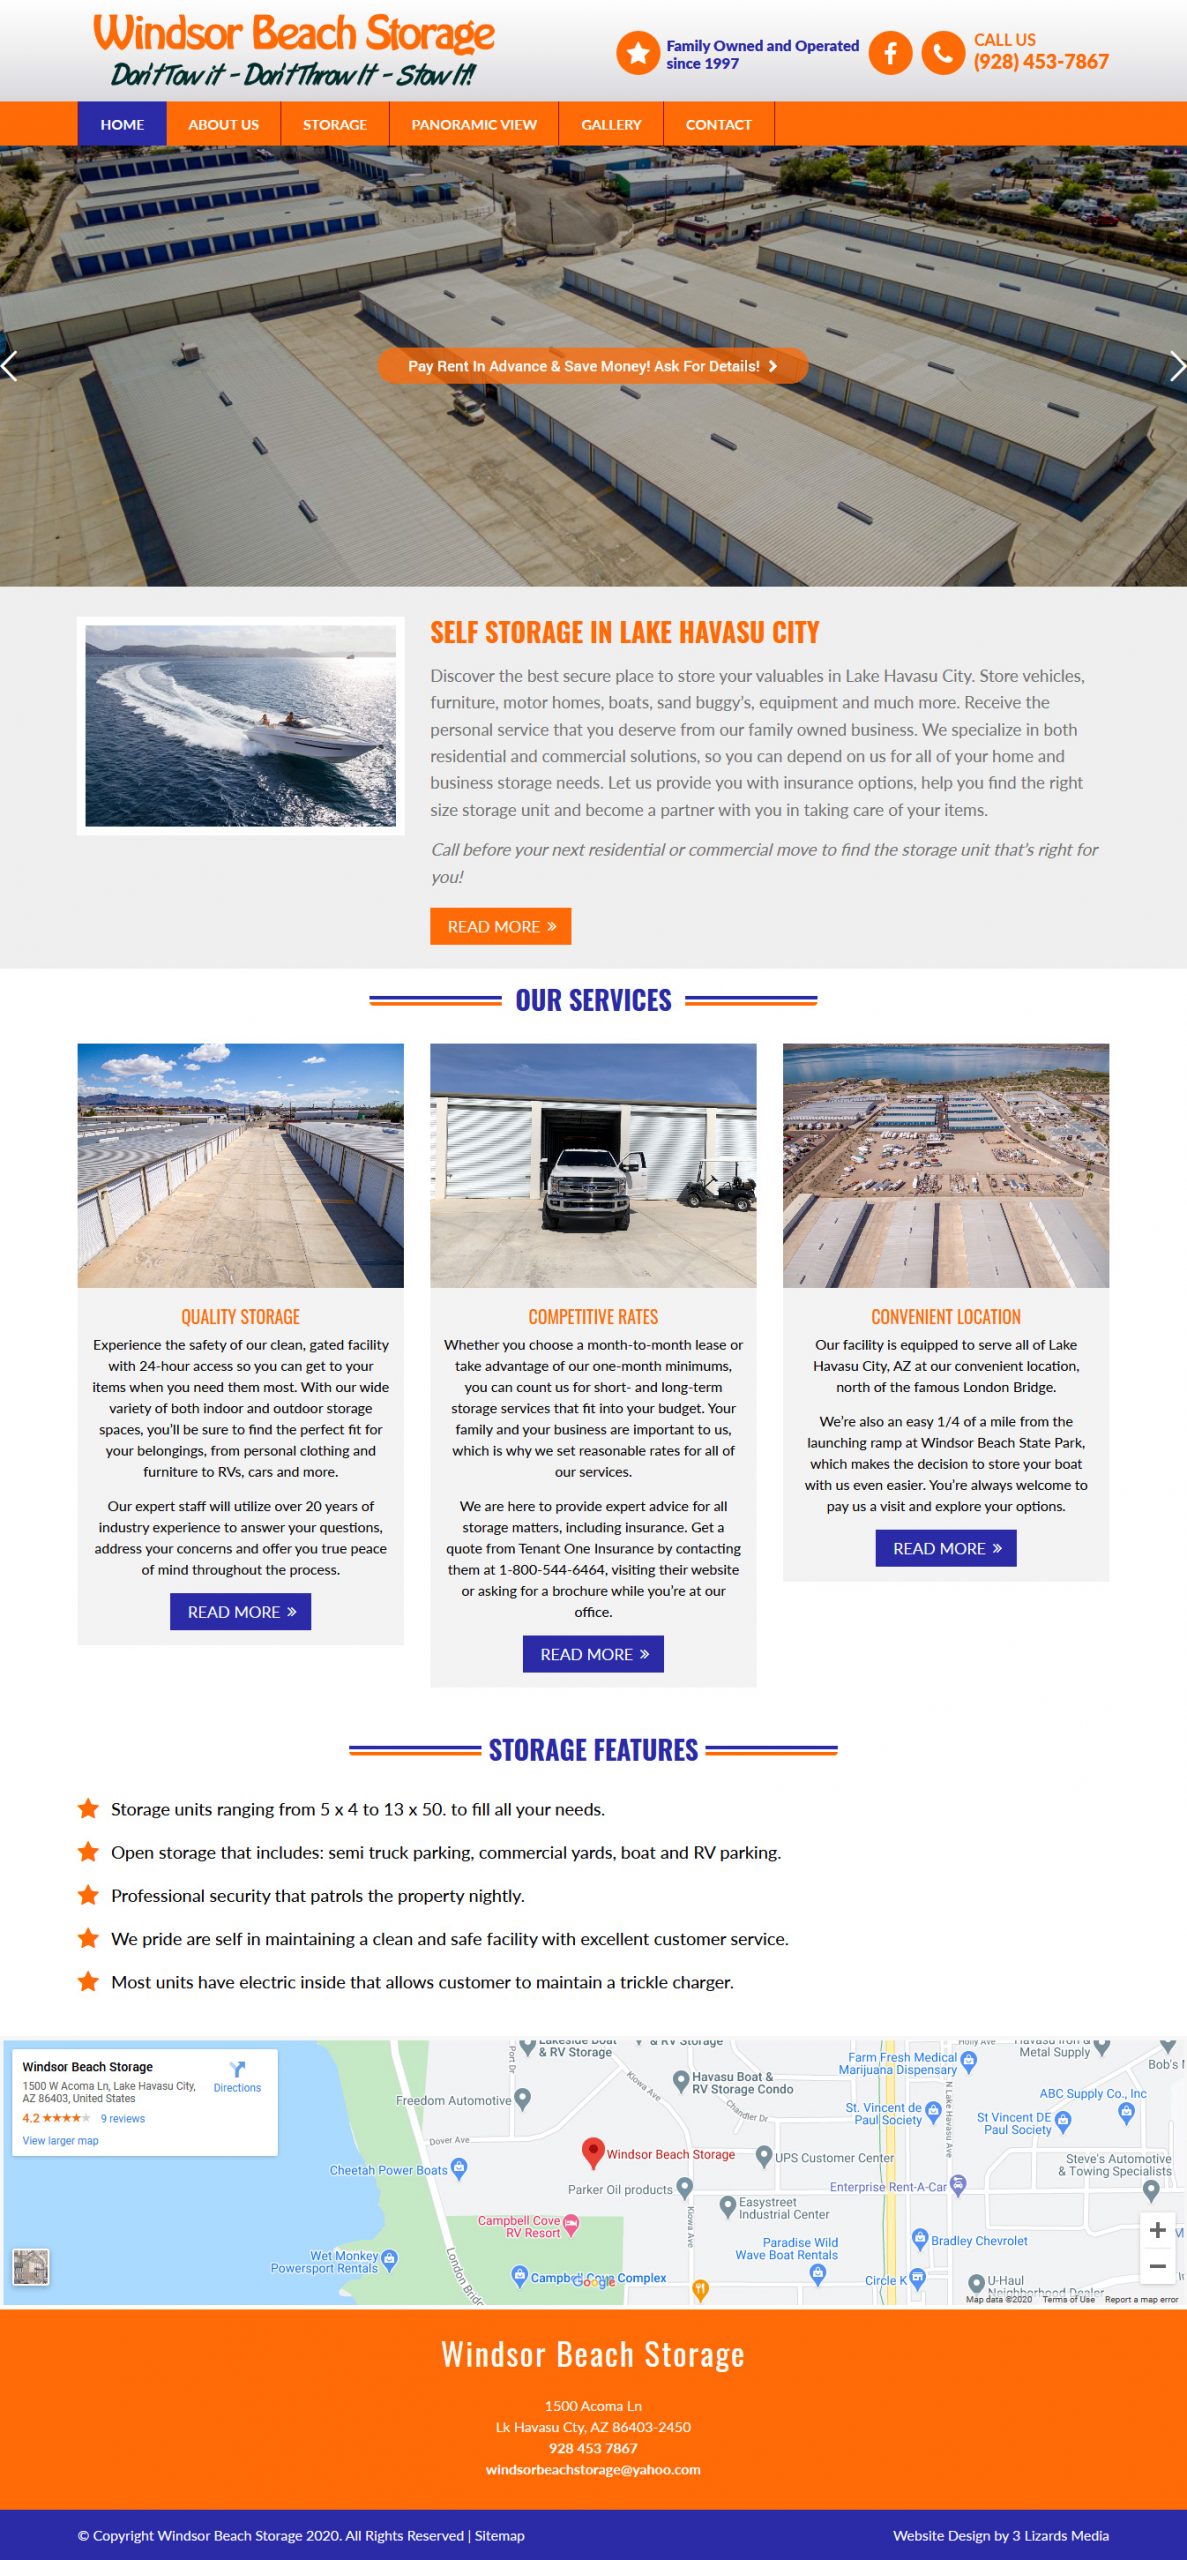 Windsor Beach Storage Website Design